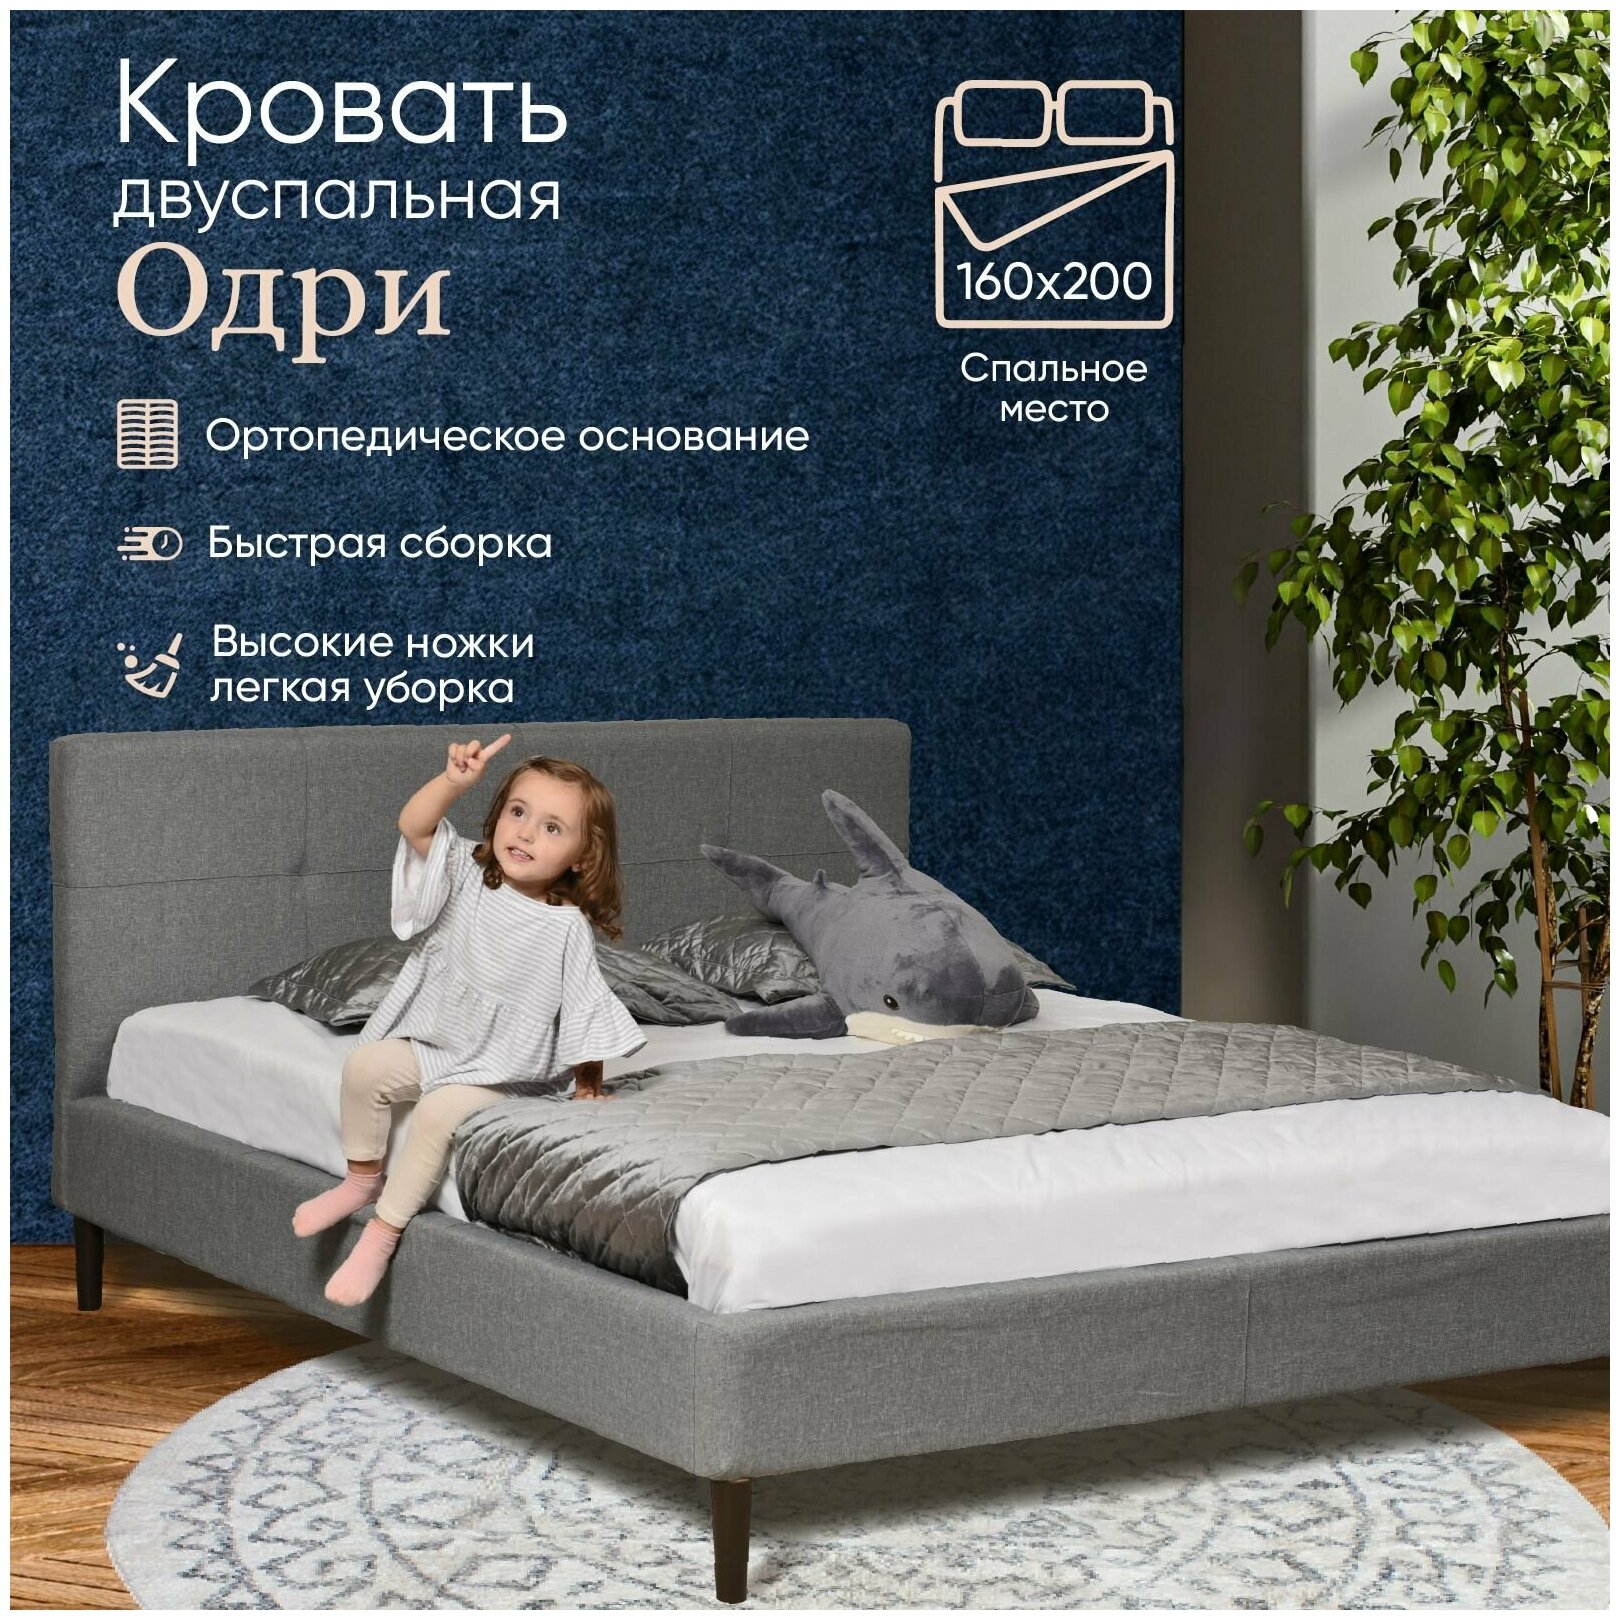 Кровать Одри спальное место 160х200 см, ортопедическое основание, серая рогожка, на высоких ножках, Ами Мебель, Беларусь